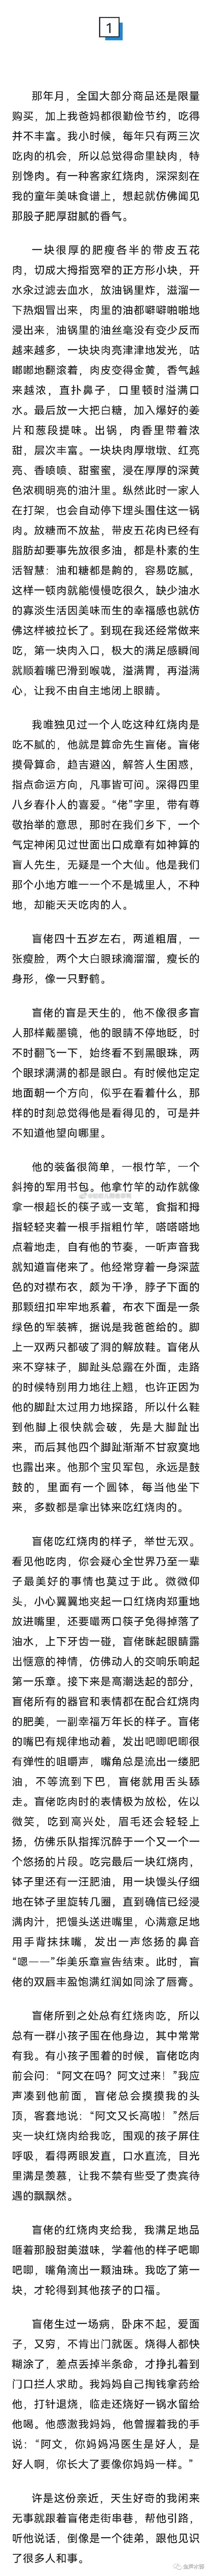 来源：北京日报、澎湃新闻、天涯杂志、半岛都市报、每日经济新闻